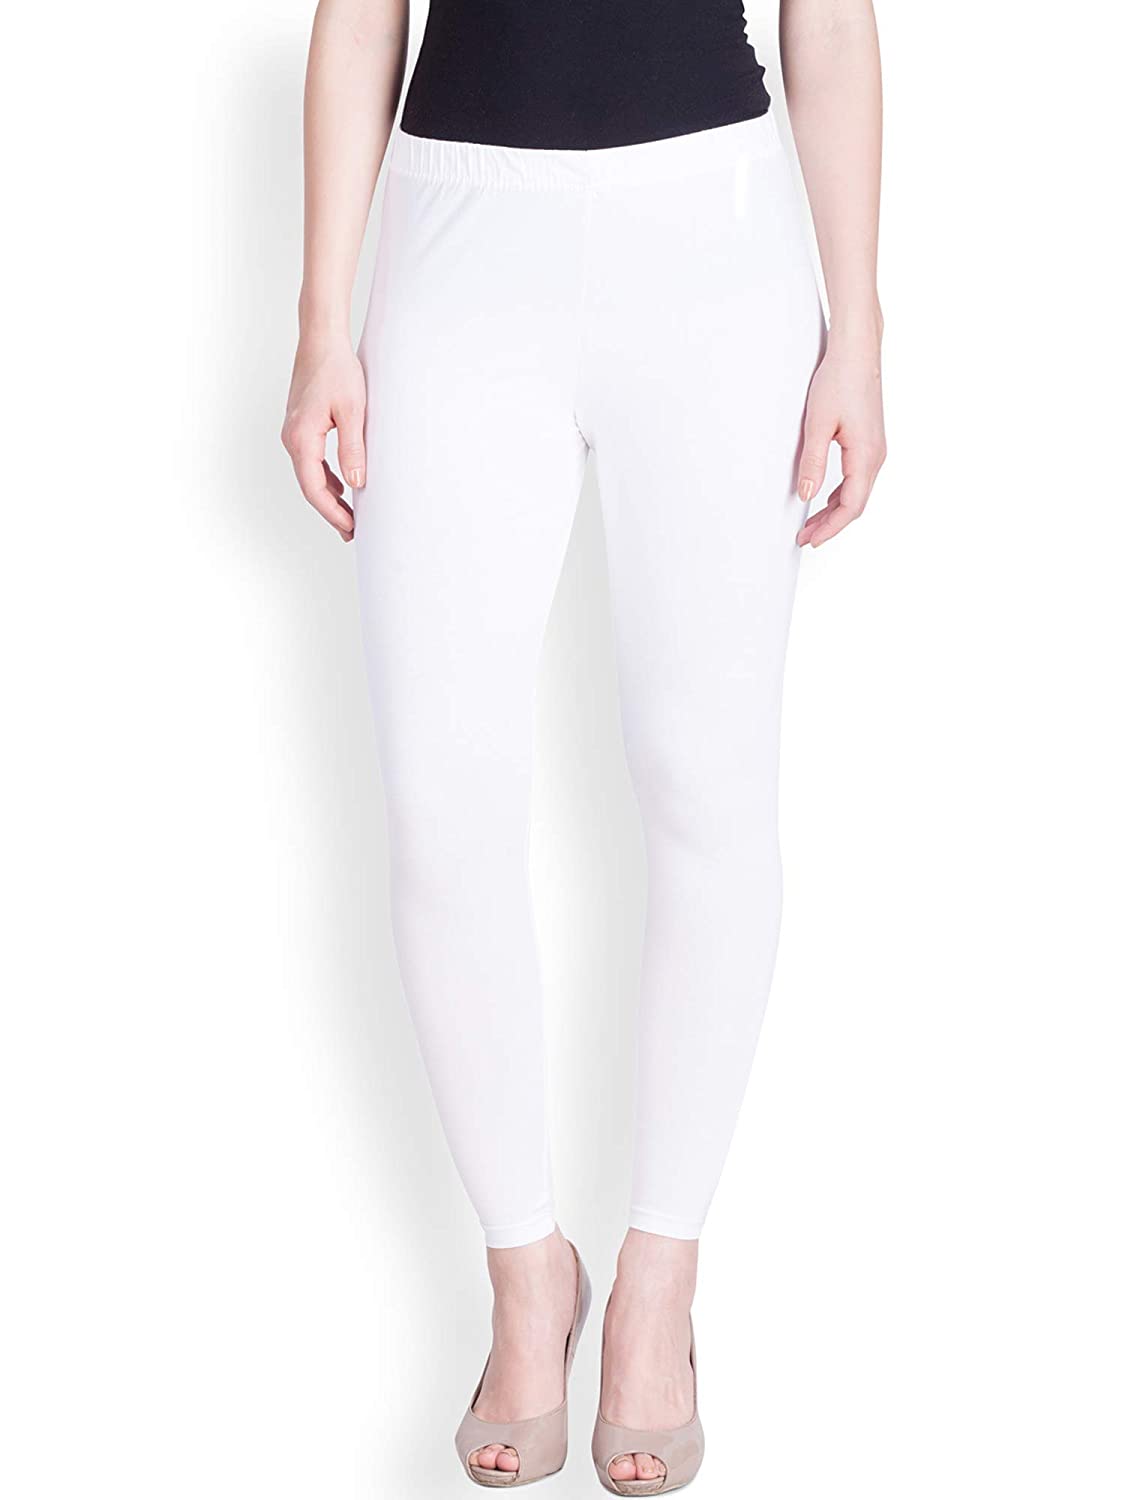 http://stilento.com/cdn/shop/products/lux-lyra-ankle-length-white-leggings-free-size-for-ladies-stilento-1.jpg?v=1662796273